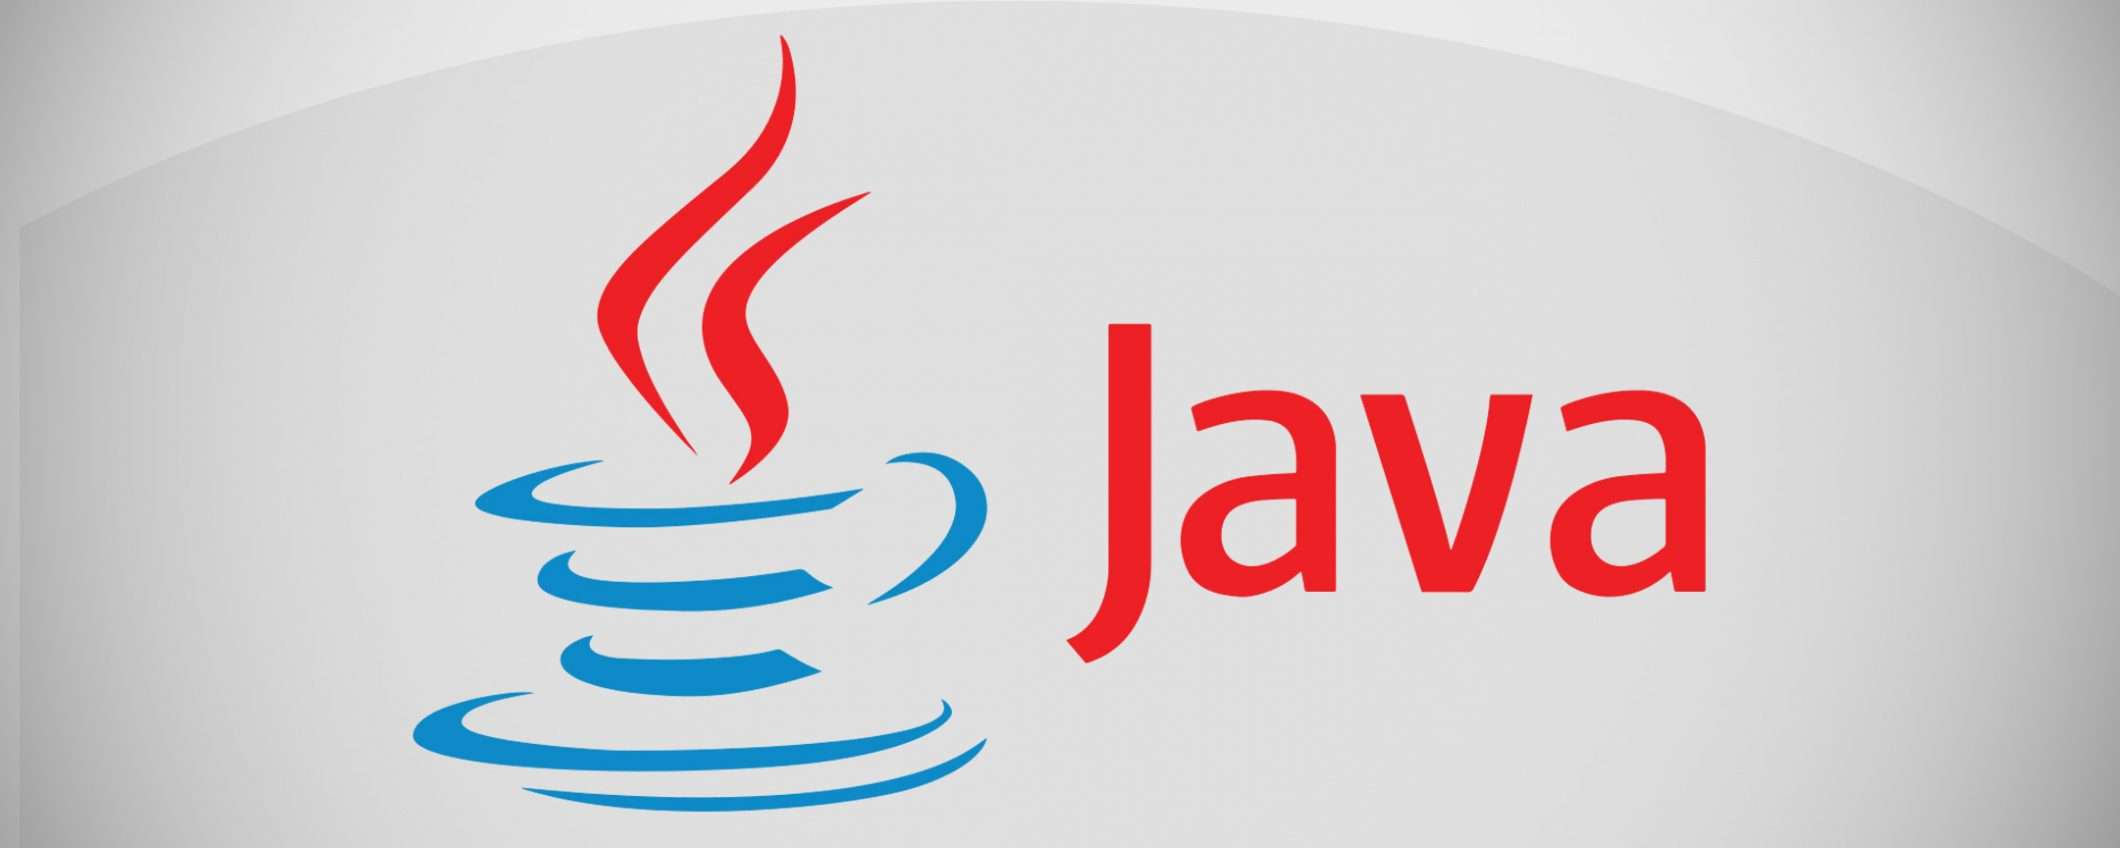 Oracle annuncia Java 14, oggi la release